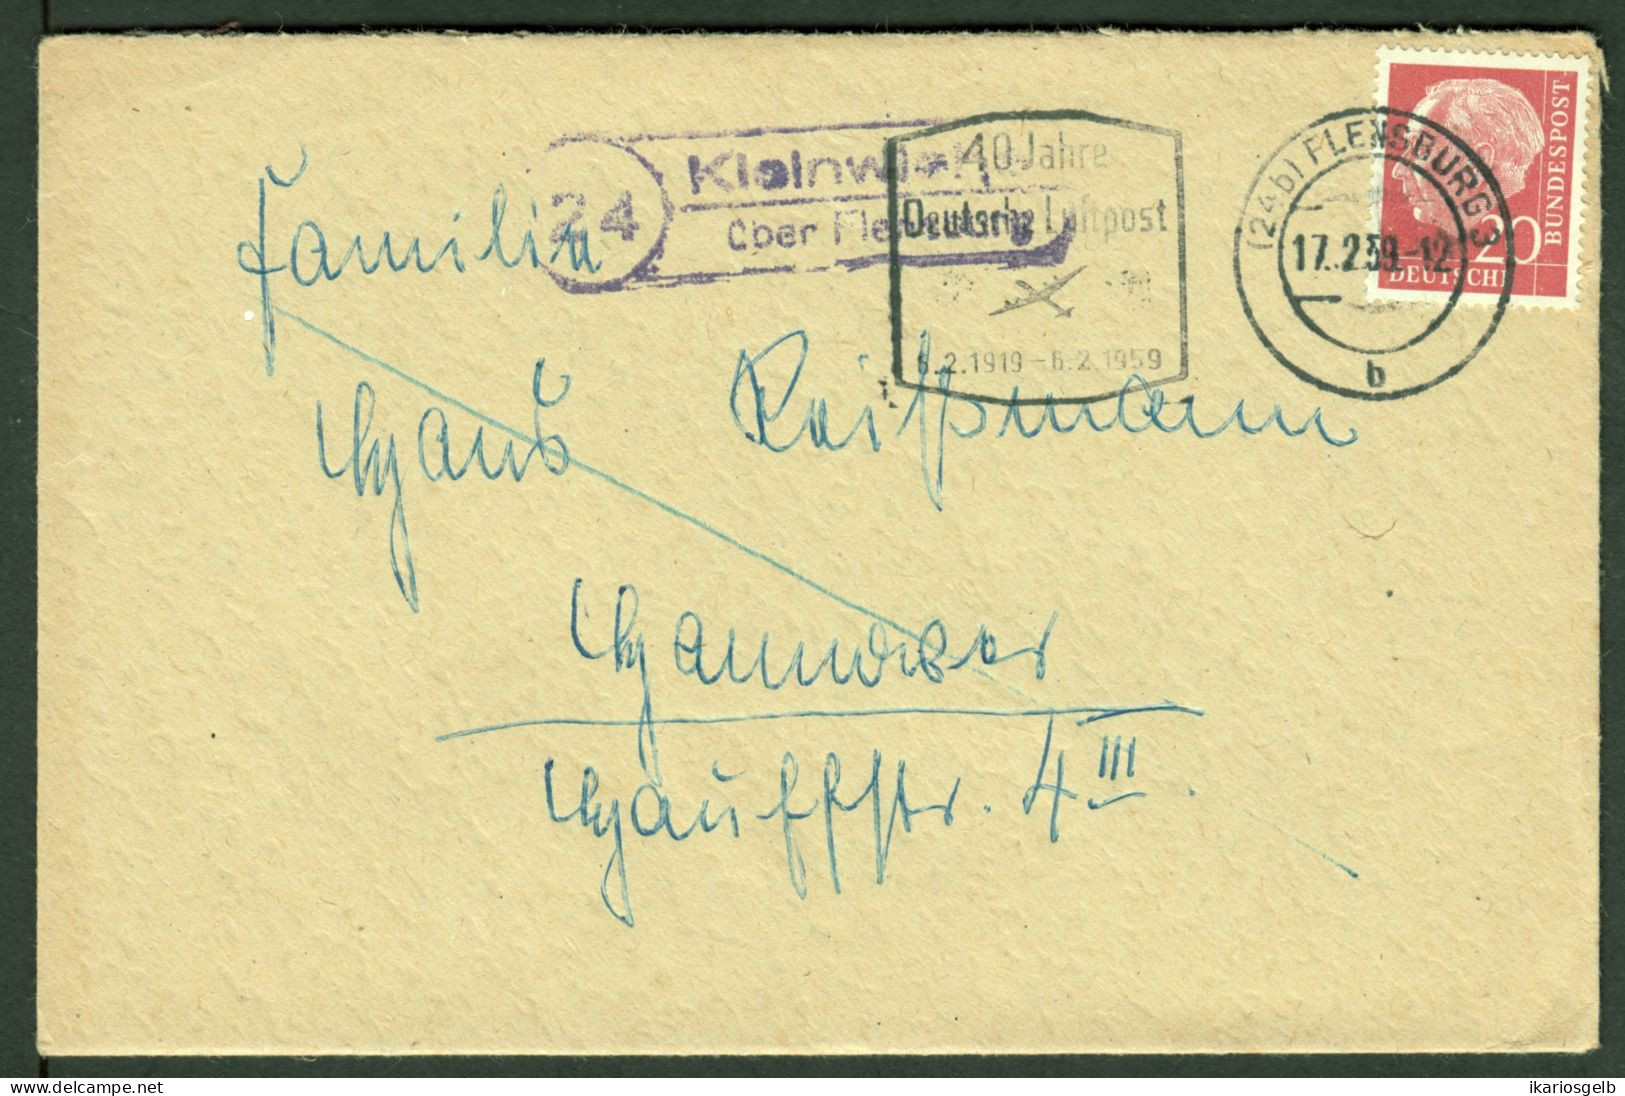 KLEINWIEHE über FLENSBURG = LINDEWITT 1959 LANDPOSTSTEMPEL Blau 20Pf-HeußI Auf Bedarfsbrief > Hannover - Lettres & Documents